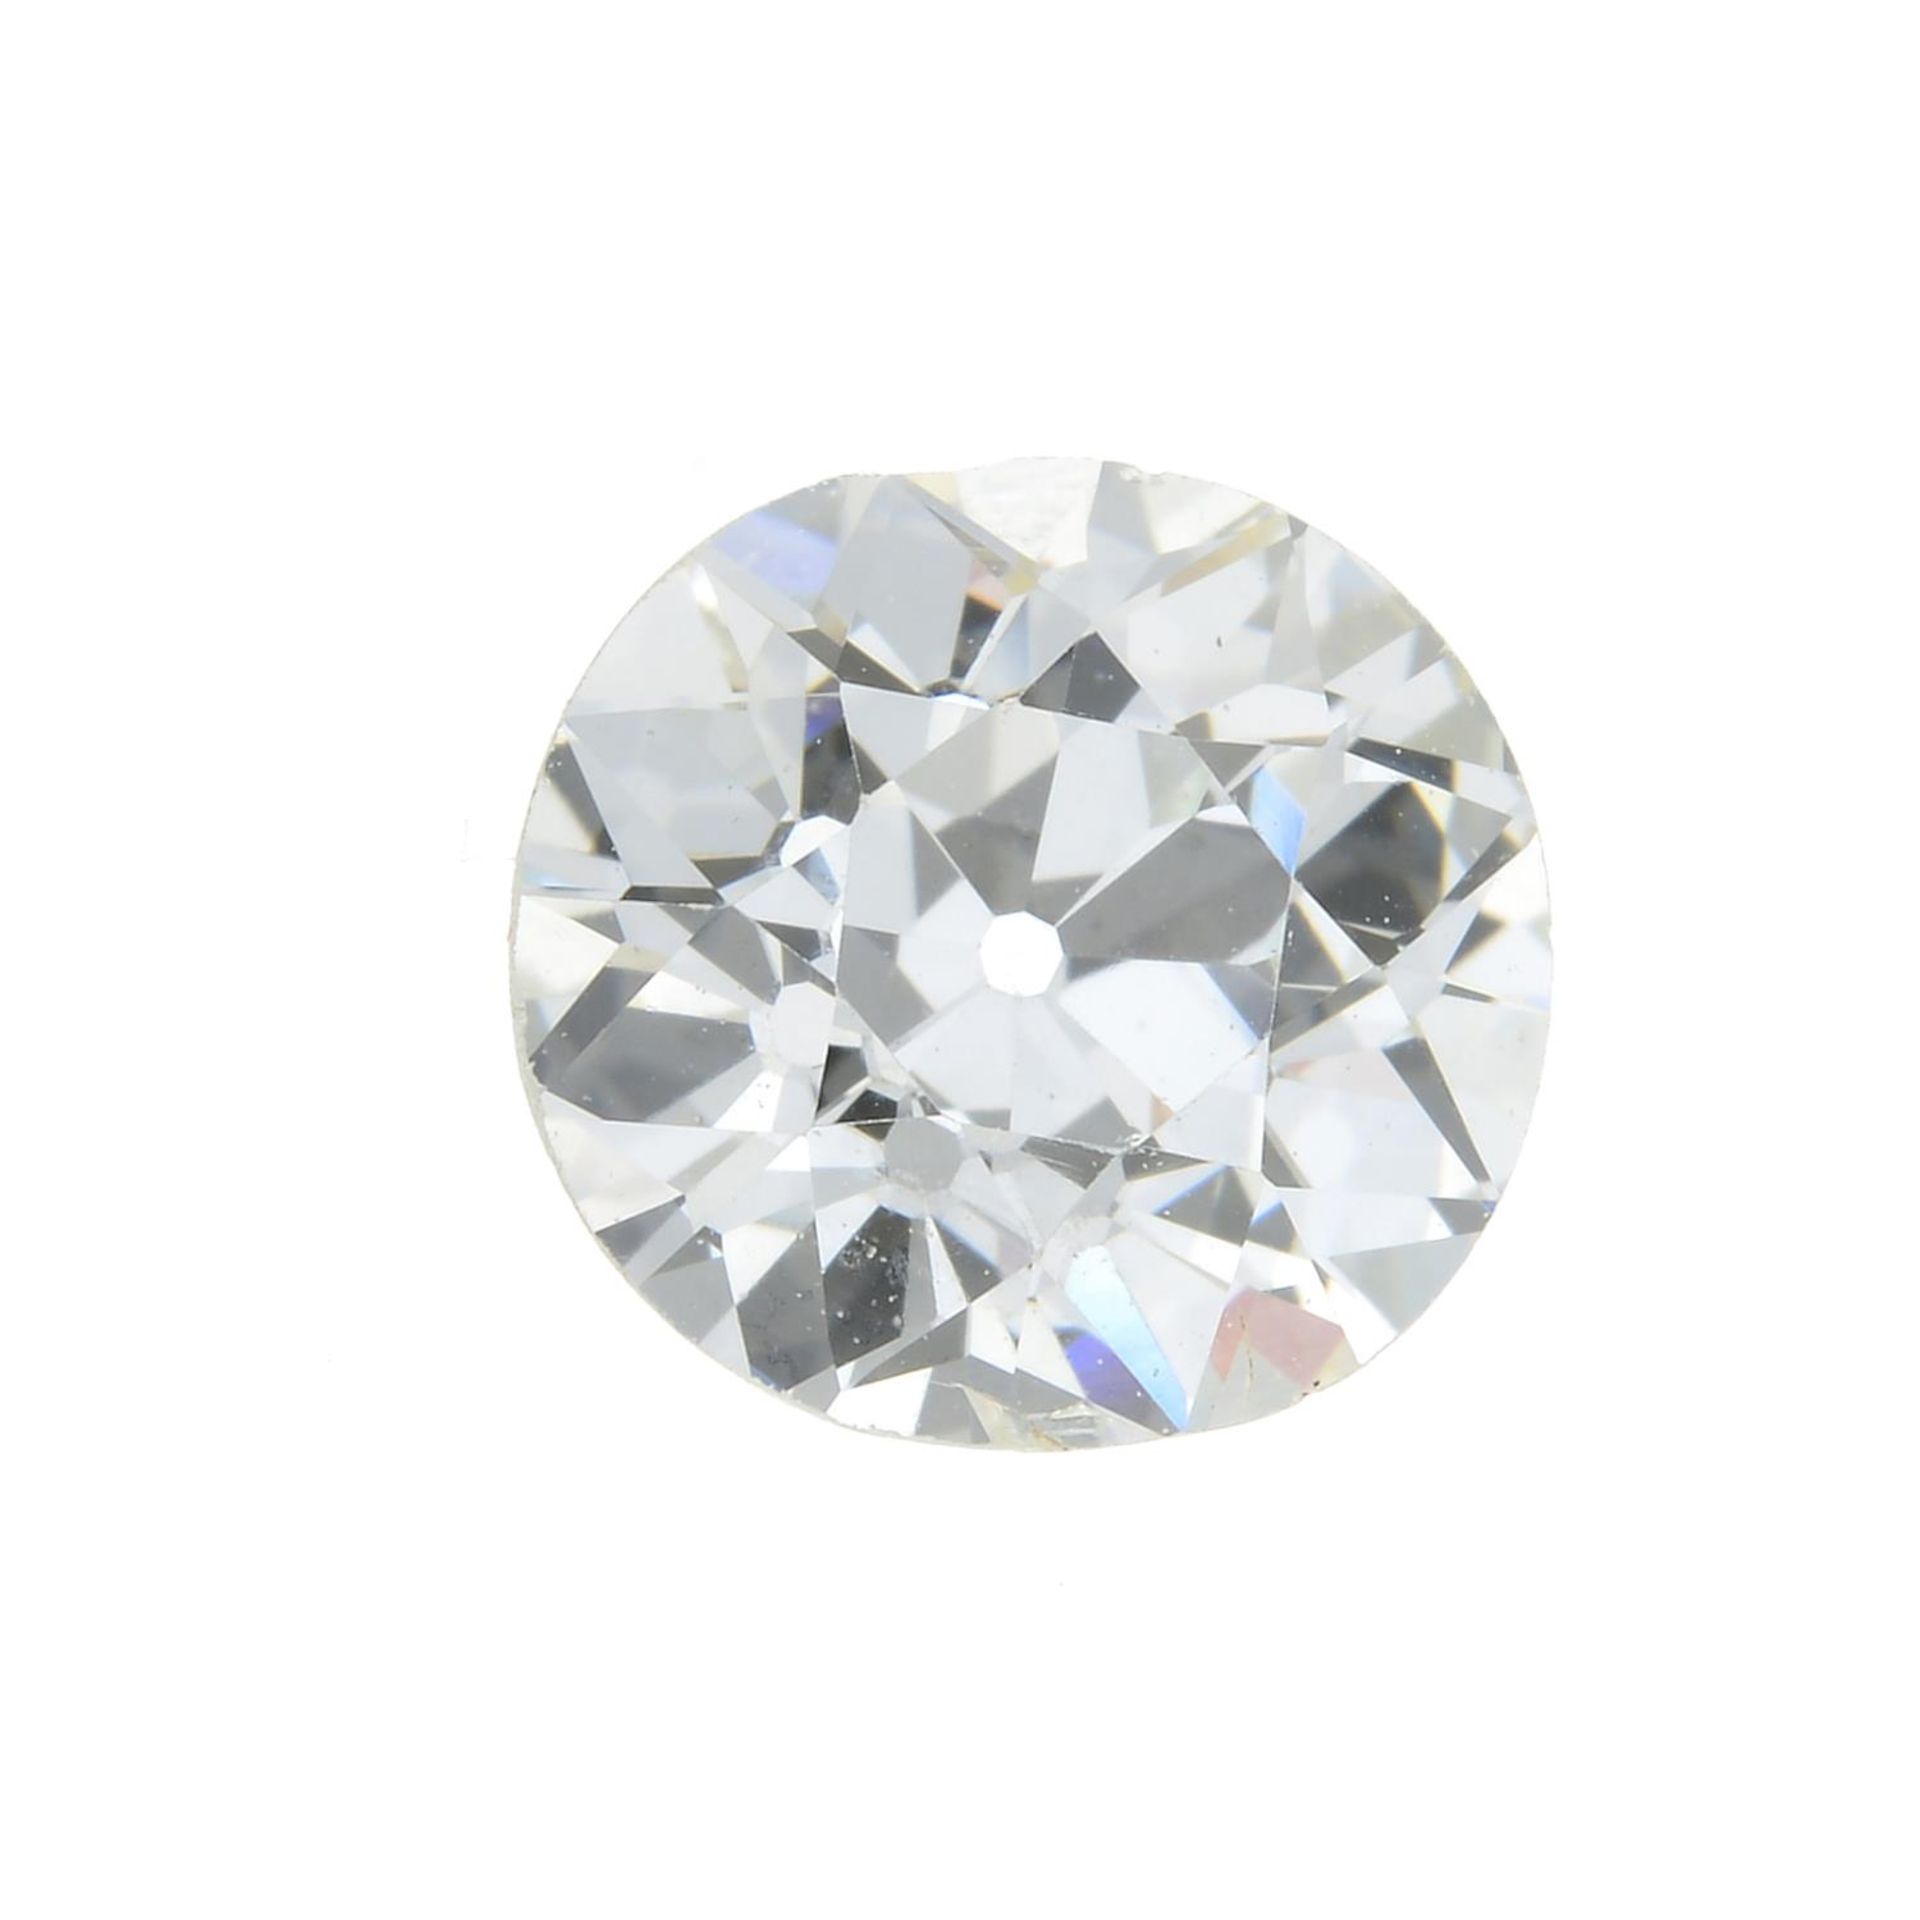 An old-cut diamond.